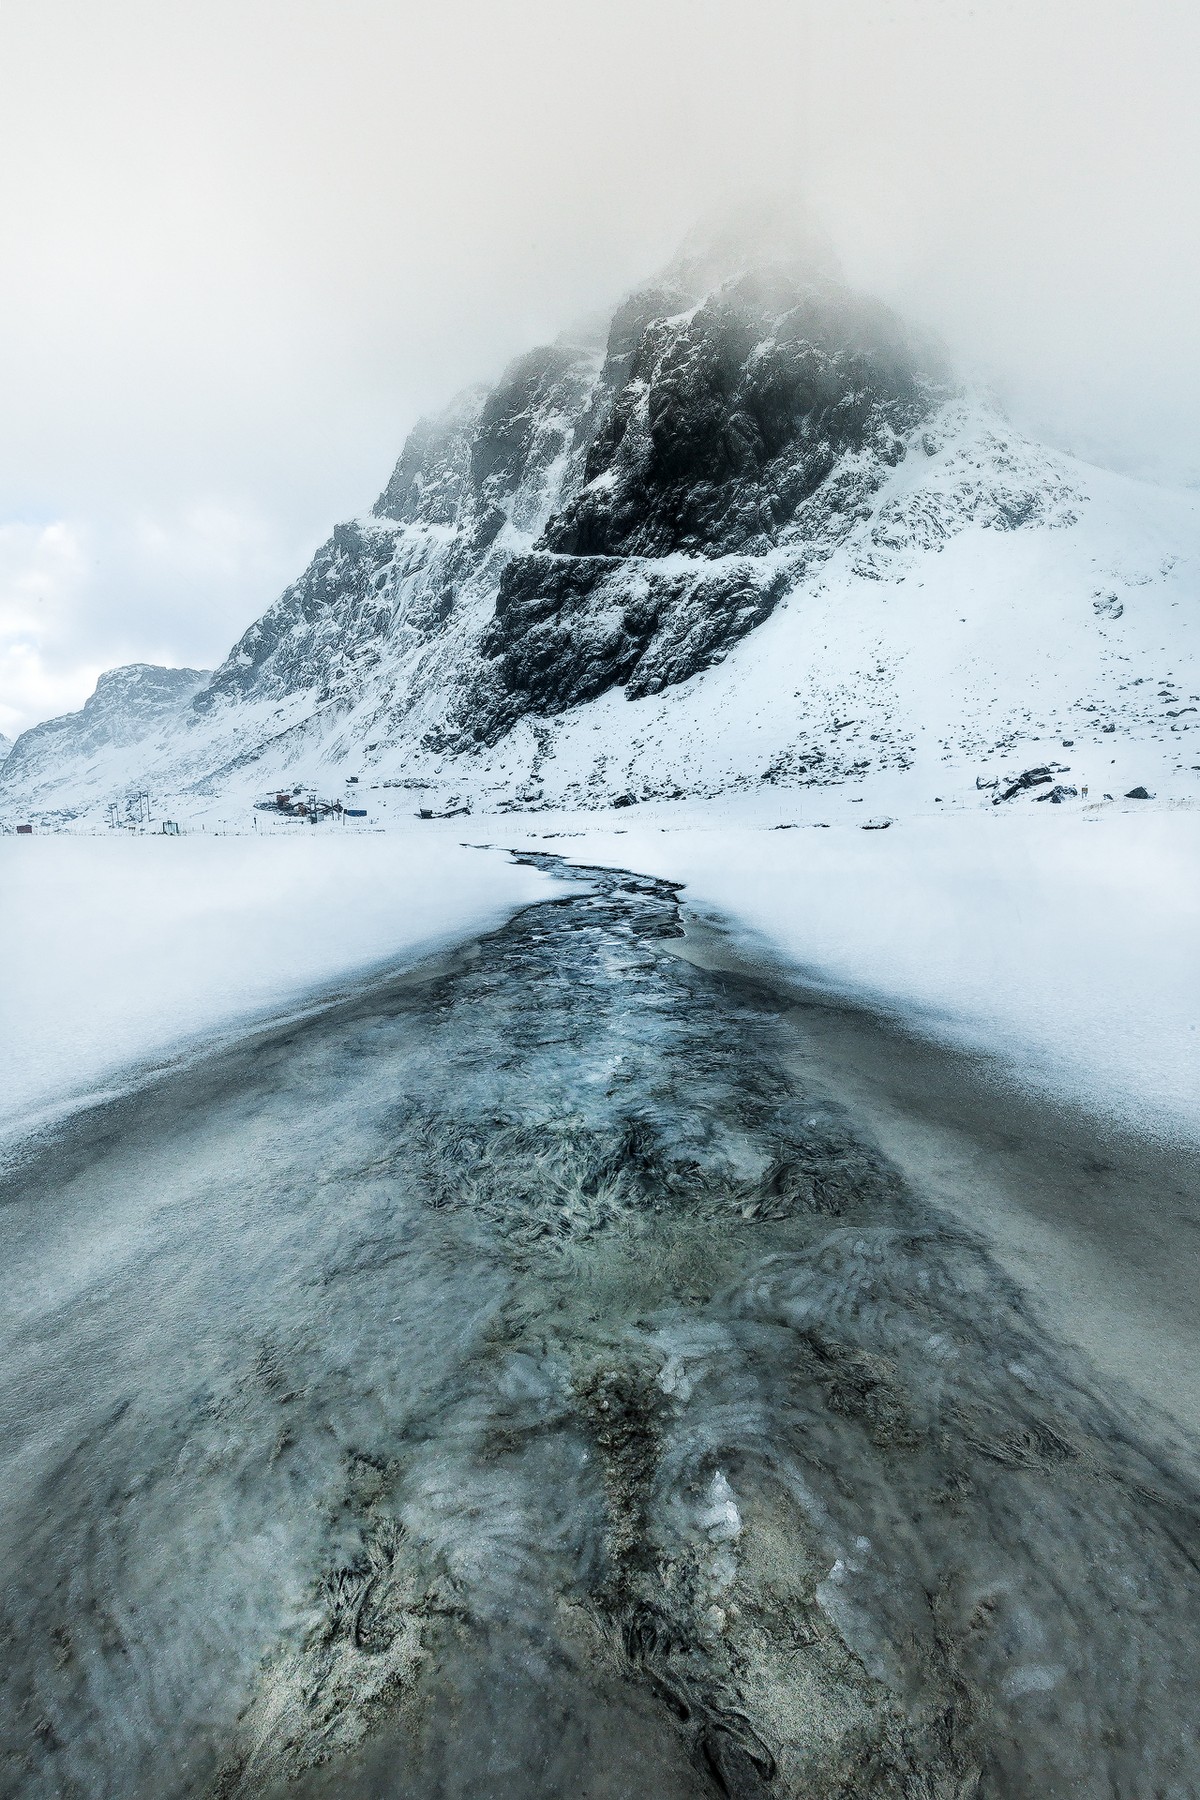 Природные пейзажи Норвегии на снимках Кима Дженссена